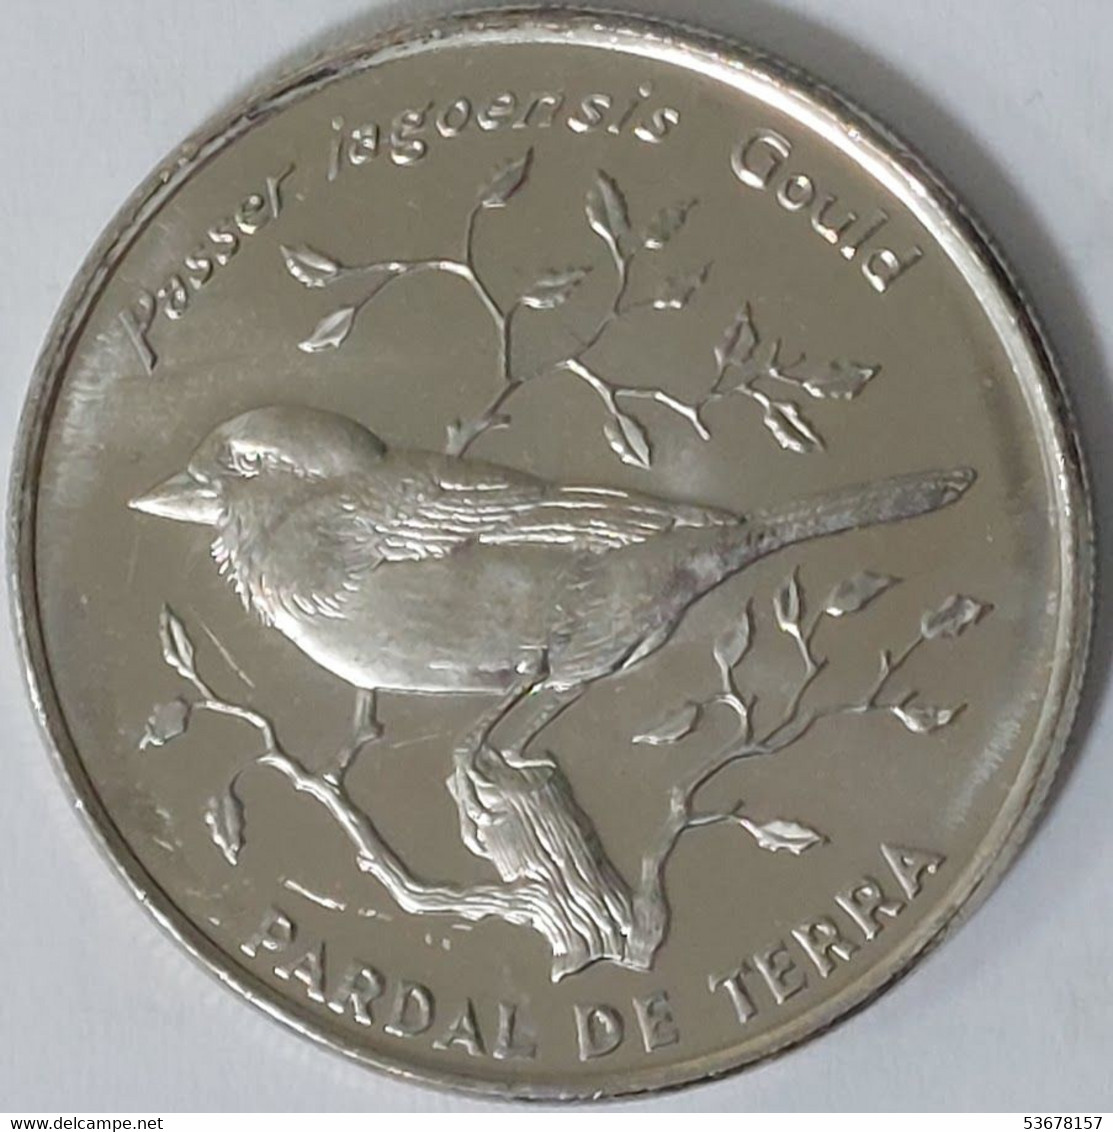 Cape Verde - 50 Escudos, 1994, Birds - Iago Sparrow, KM# 37 - Cape Verde